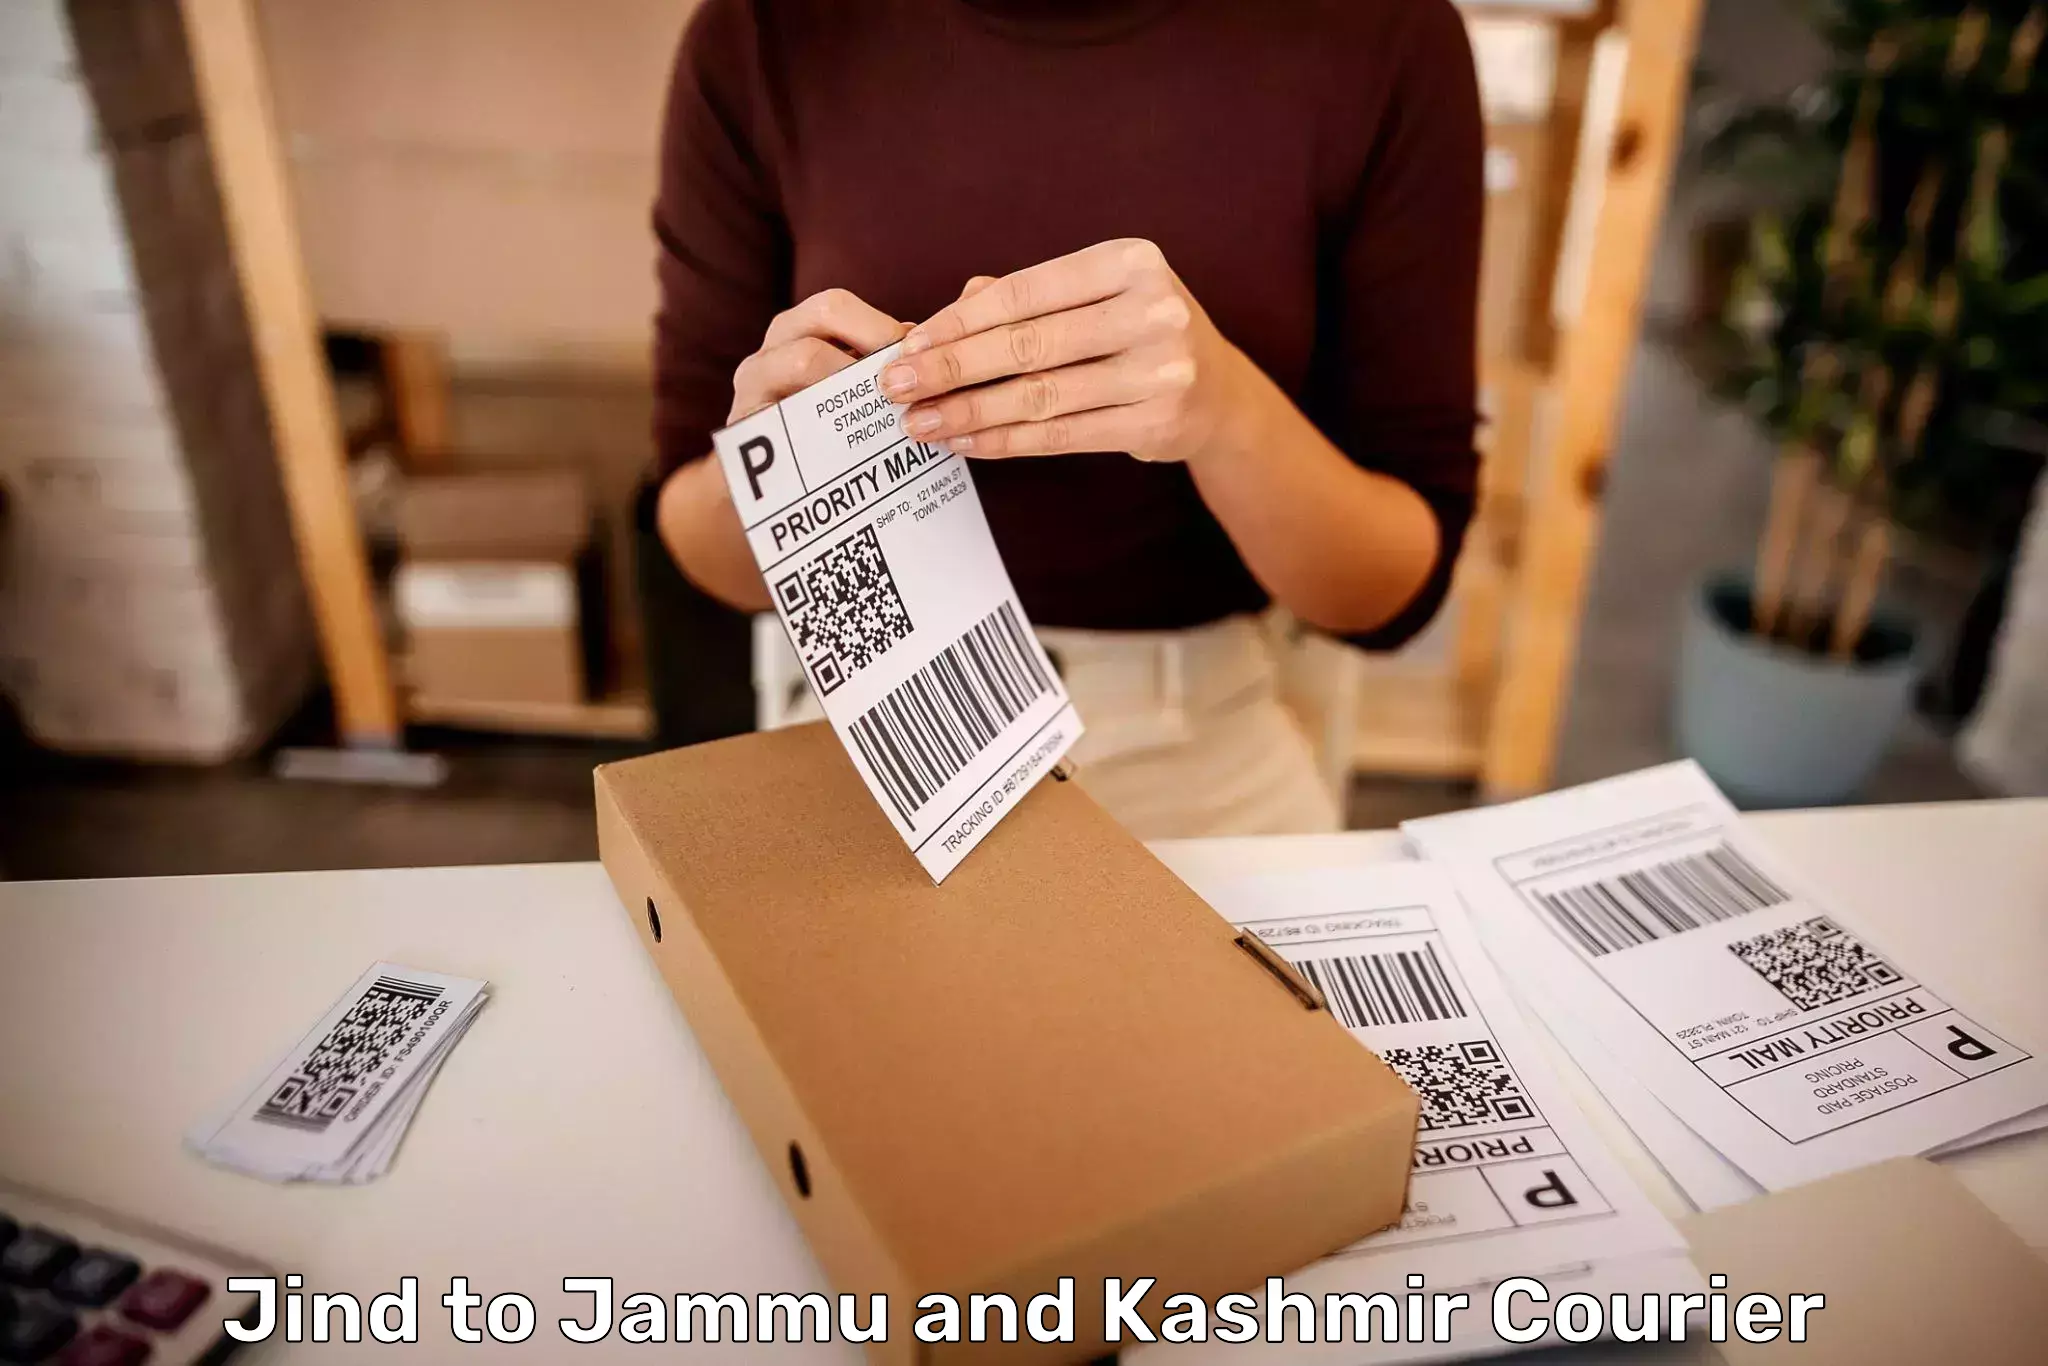 Baggage delivery technology Jind to Kishtwar